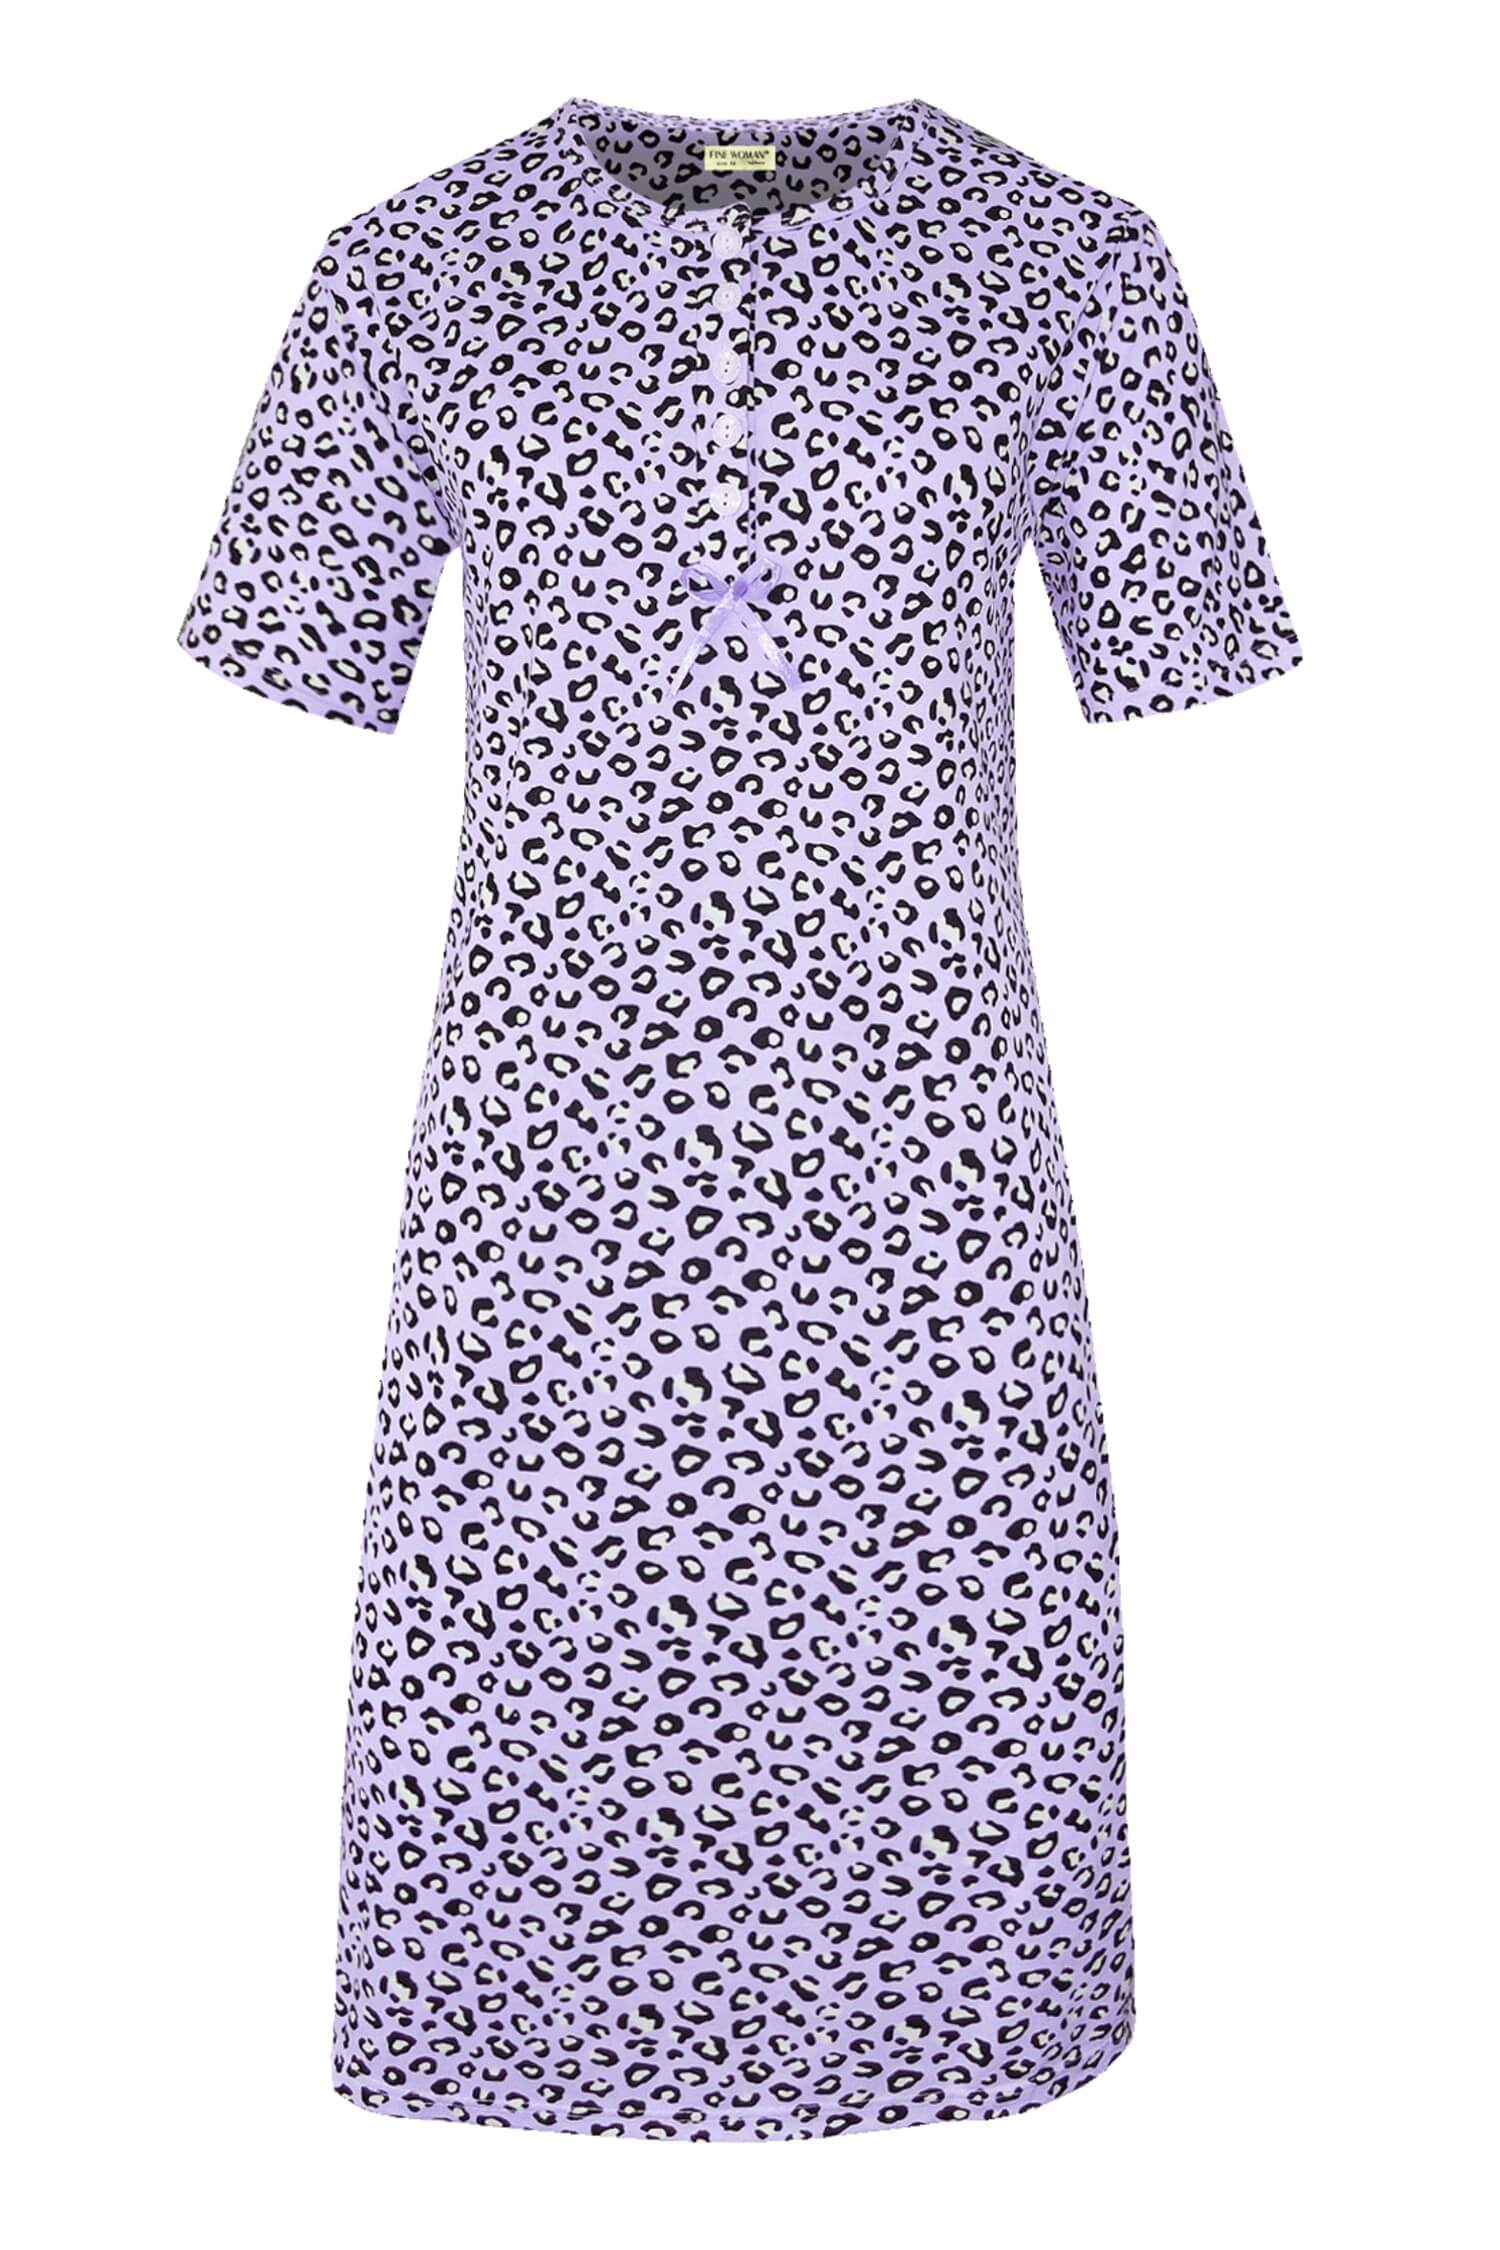 Katarina dámská noční košile leopardí vzor 6529 světle fialová L